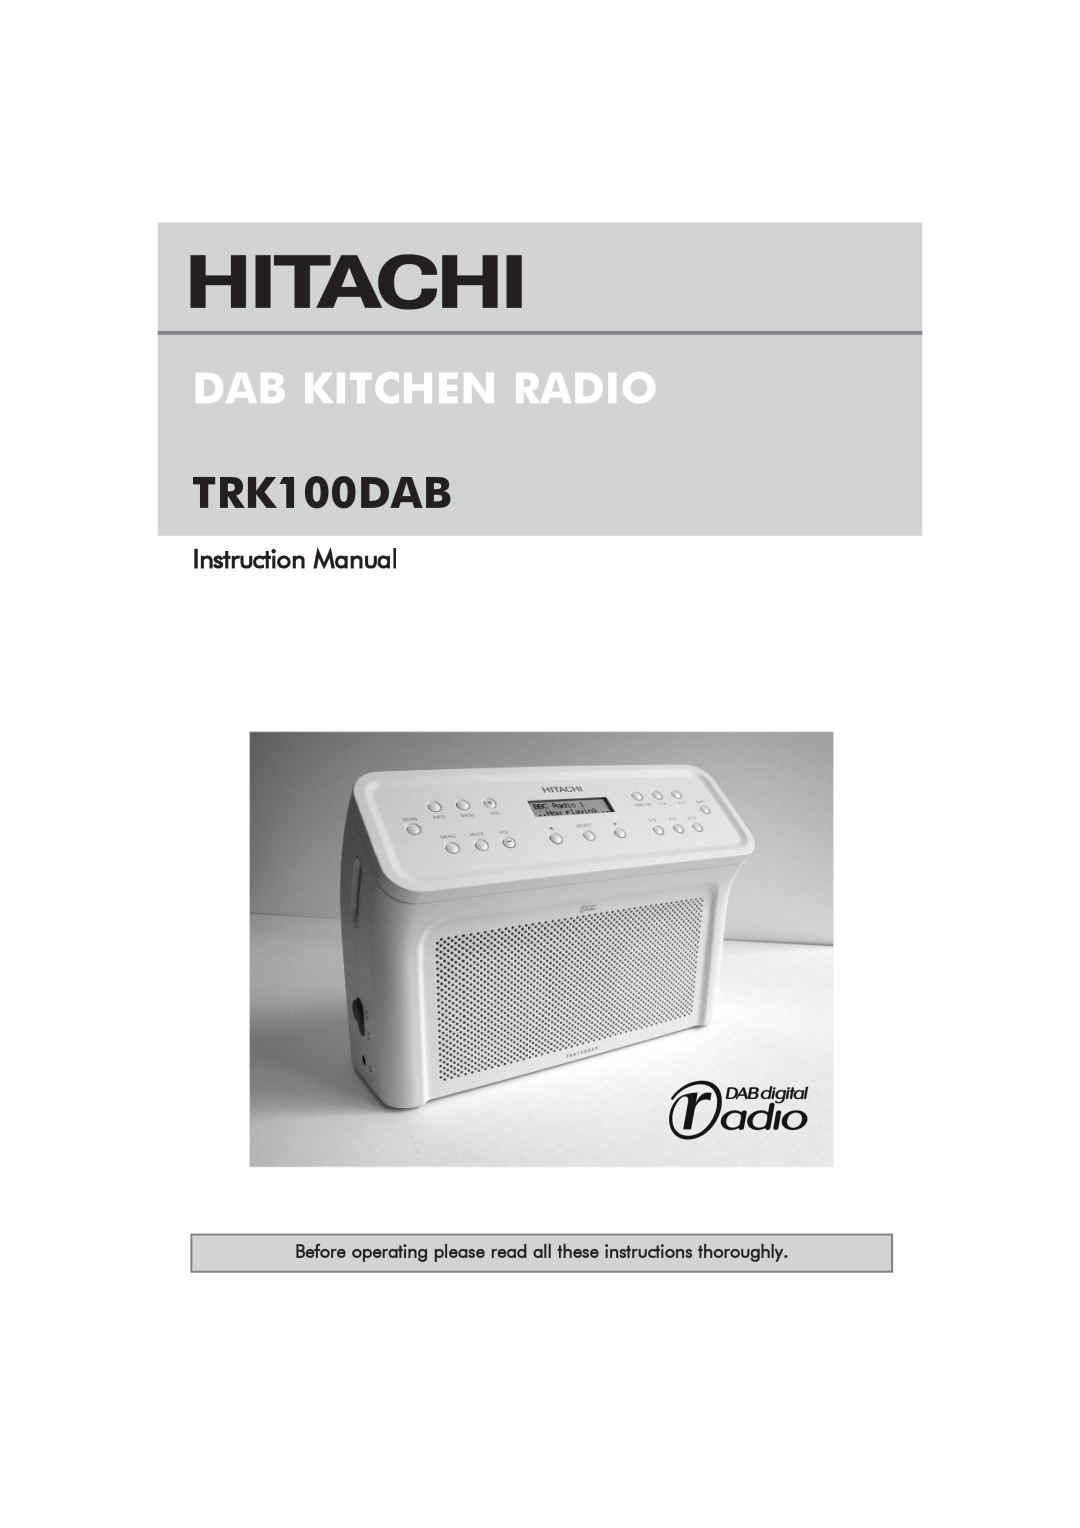 Hitachi TRK100DAB manual Dab Kitchen Radio 